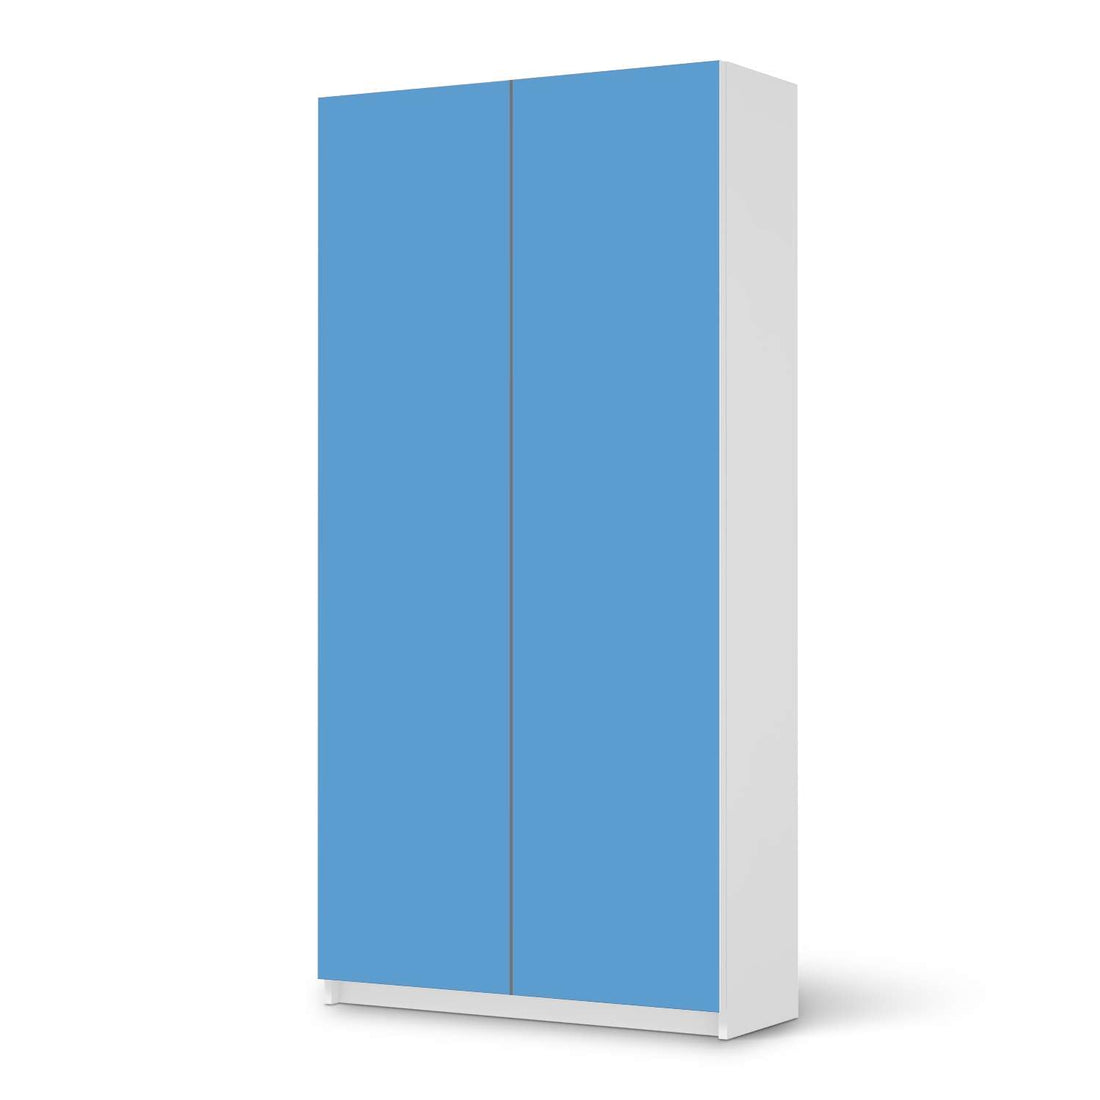 Klebefolie für Möbel Blau Light - IKEA Pax Schrank 201 cm Höhe - 2 Türen - weiss